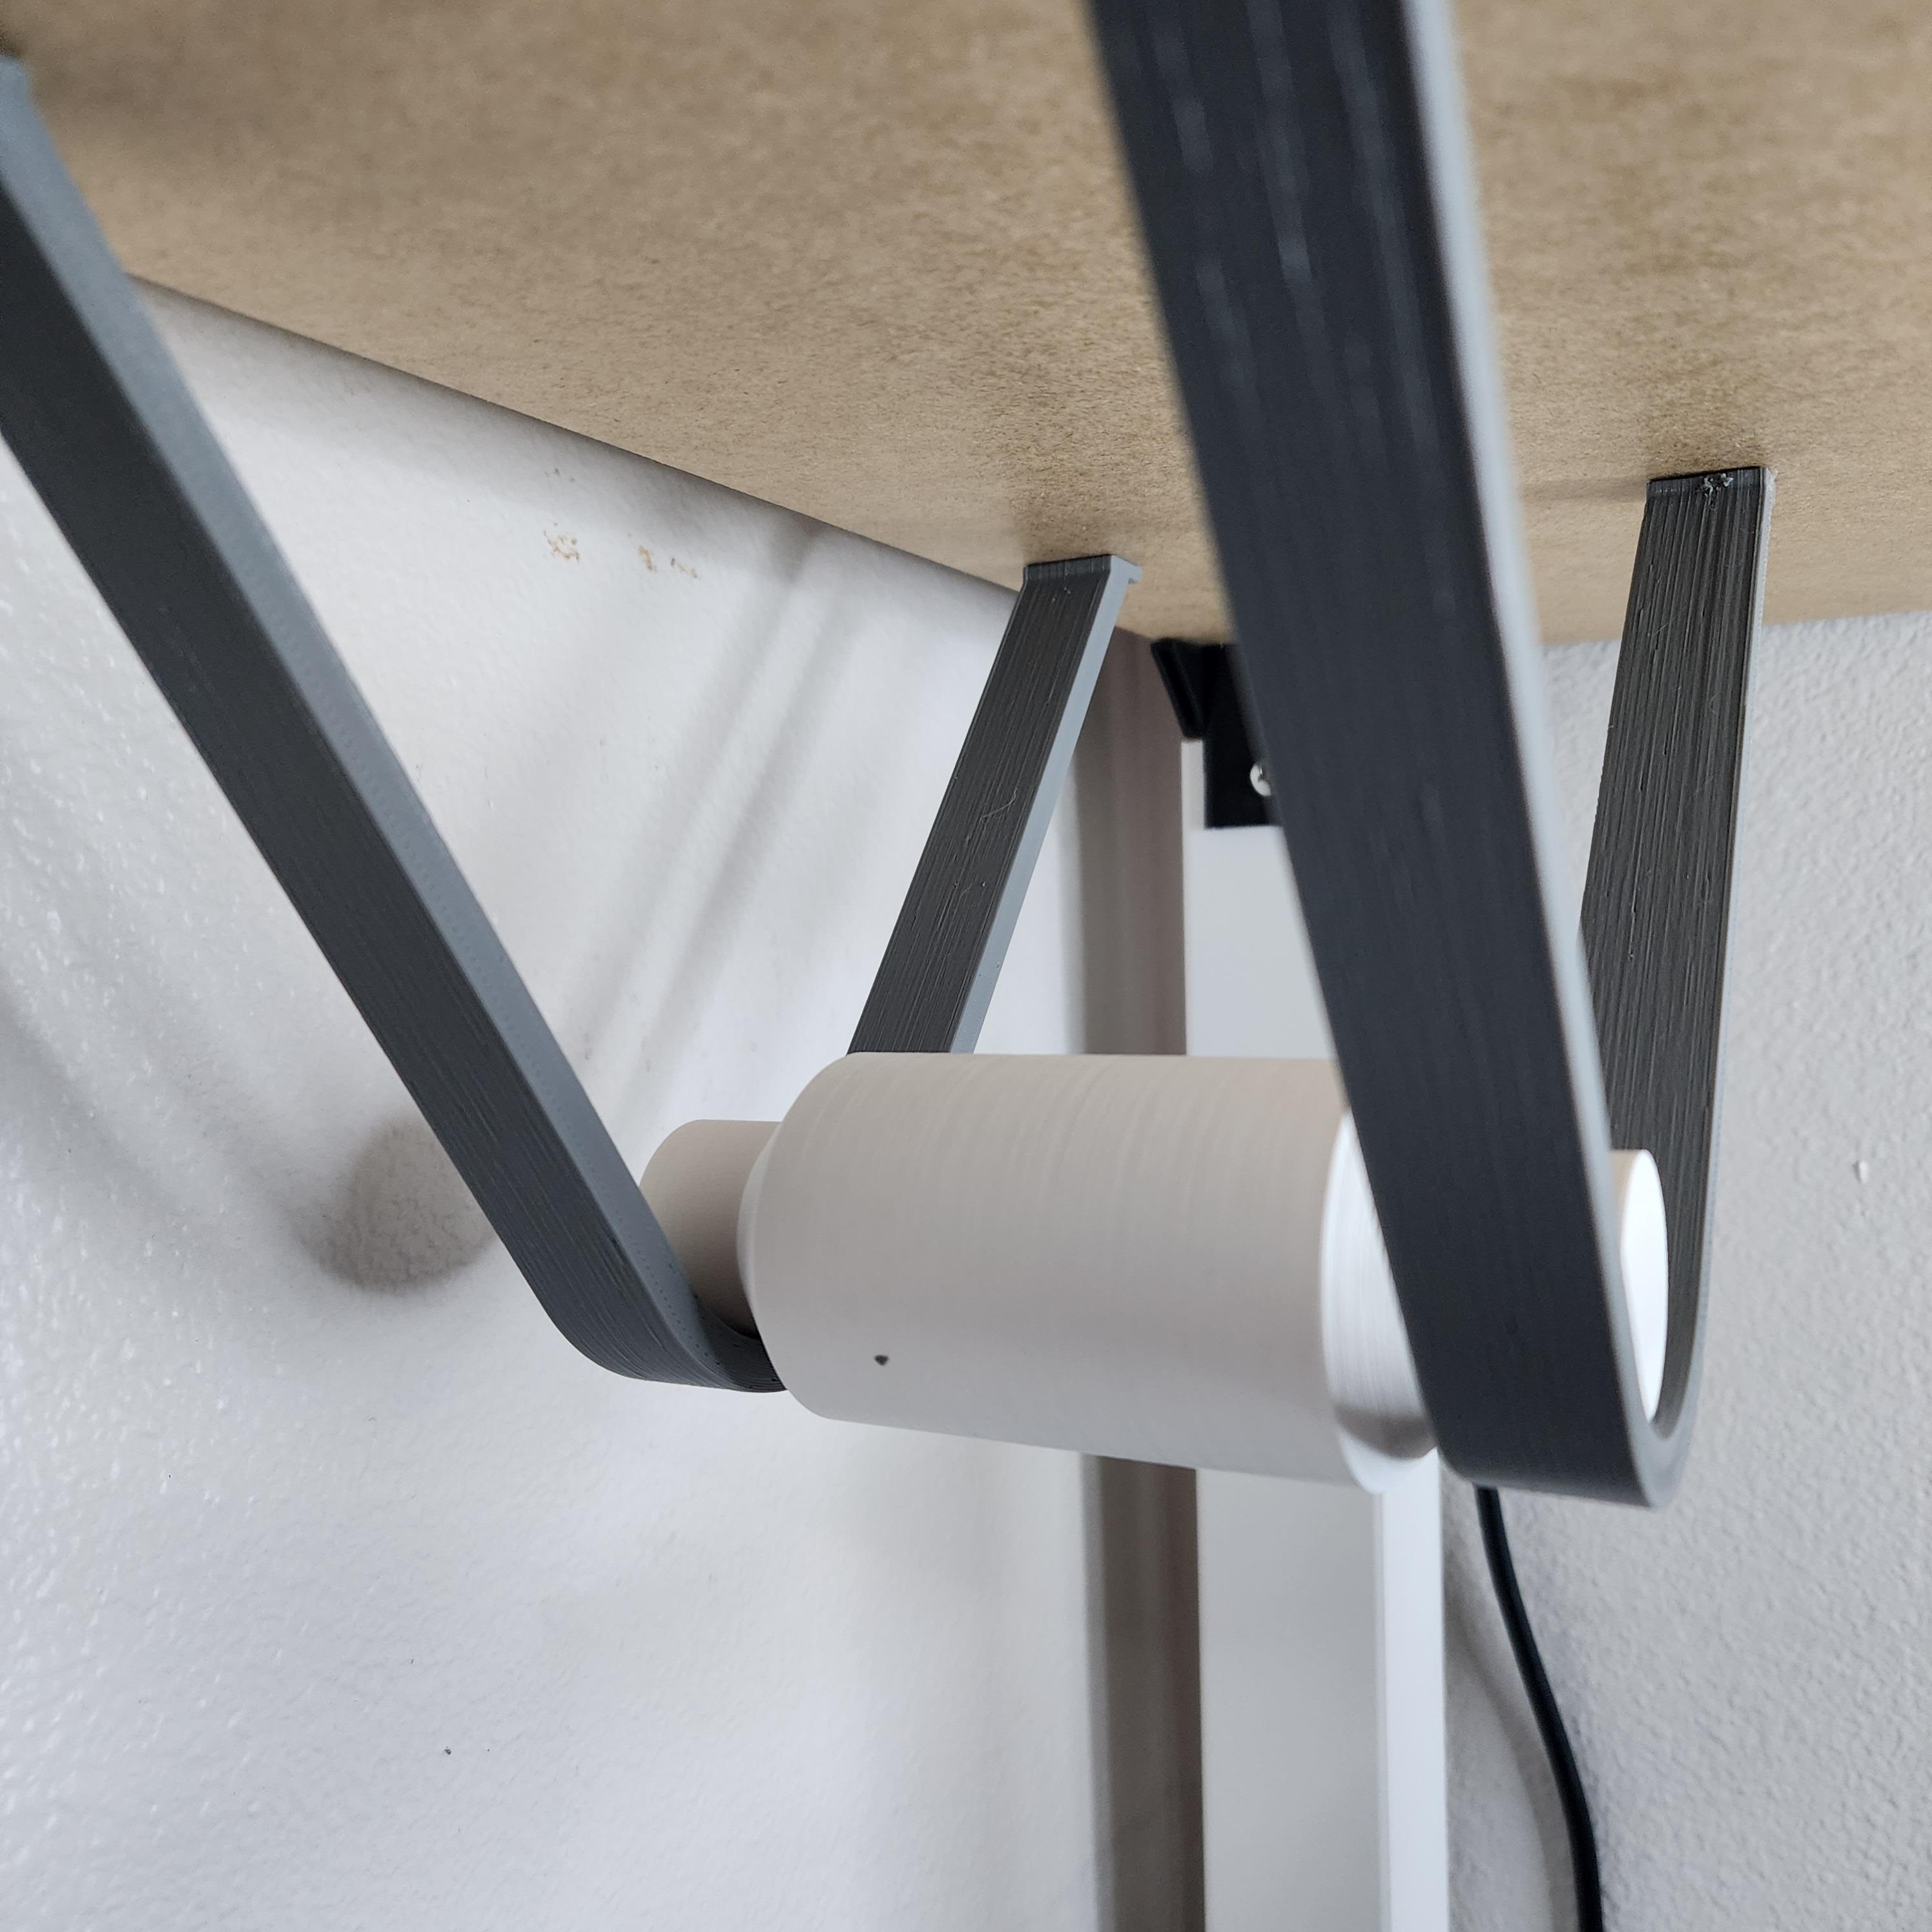 FILAMENT ROLLER FOR IKEA LACK ENCLOSURE 3d model